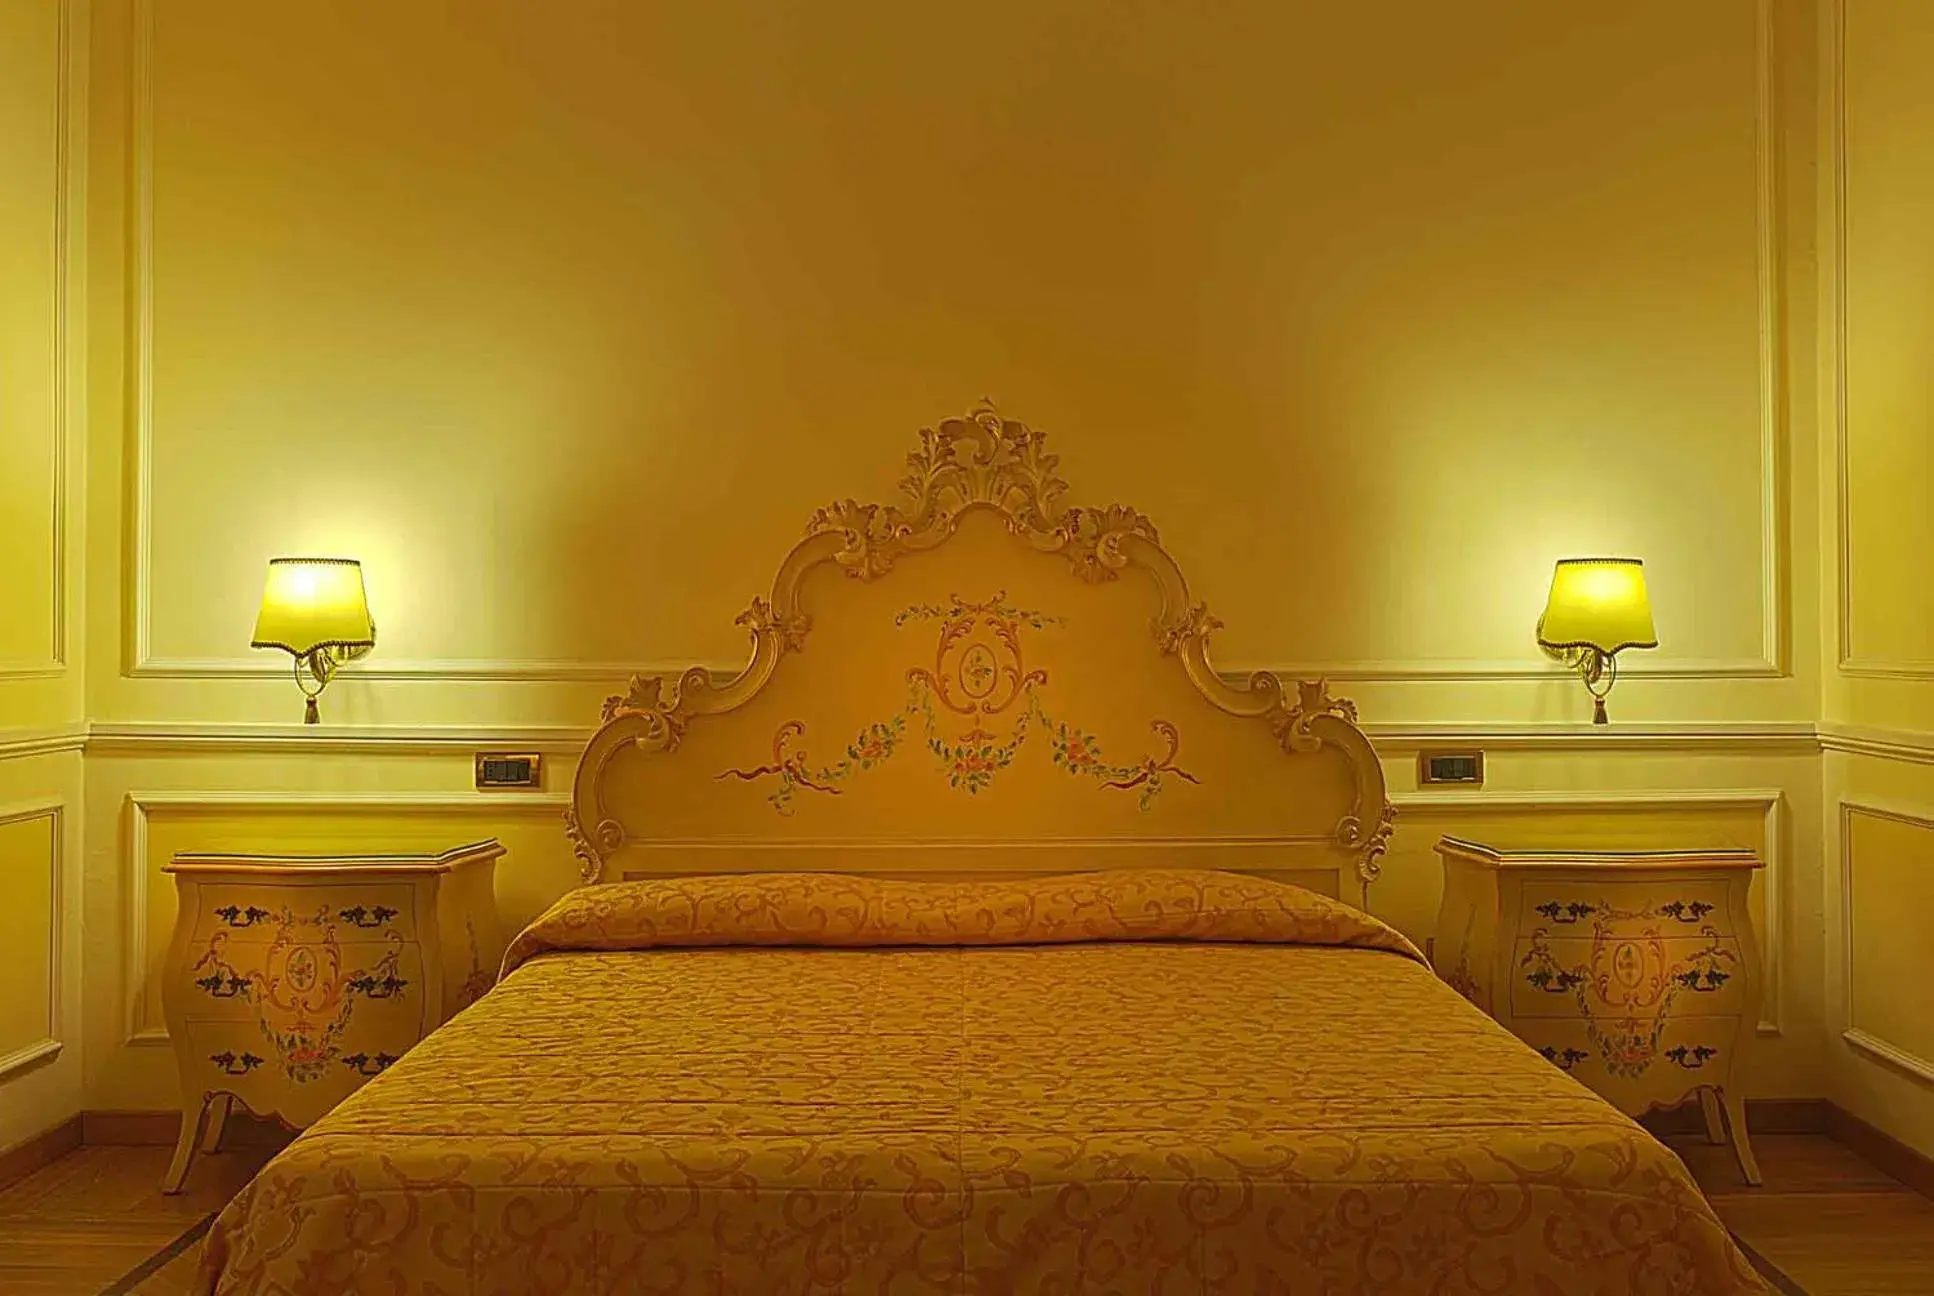 Bed in Grand Hotel Villa Balbi